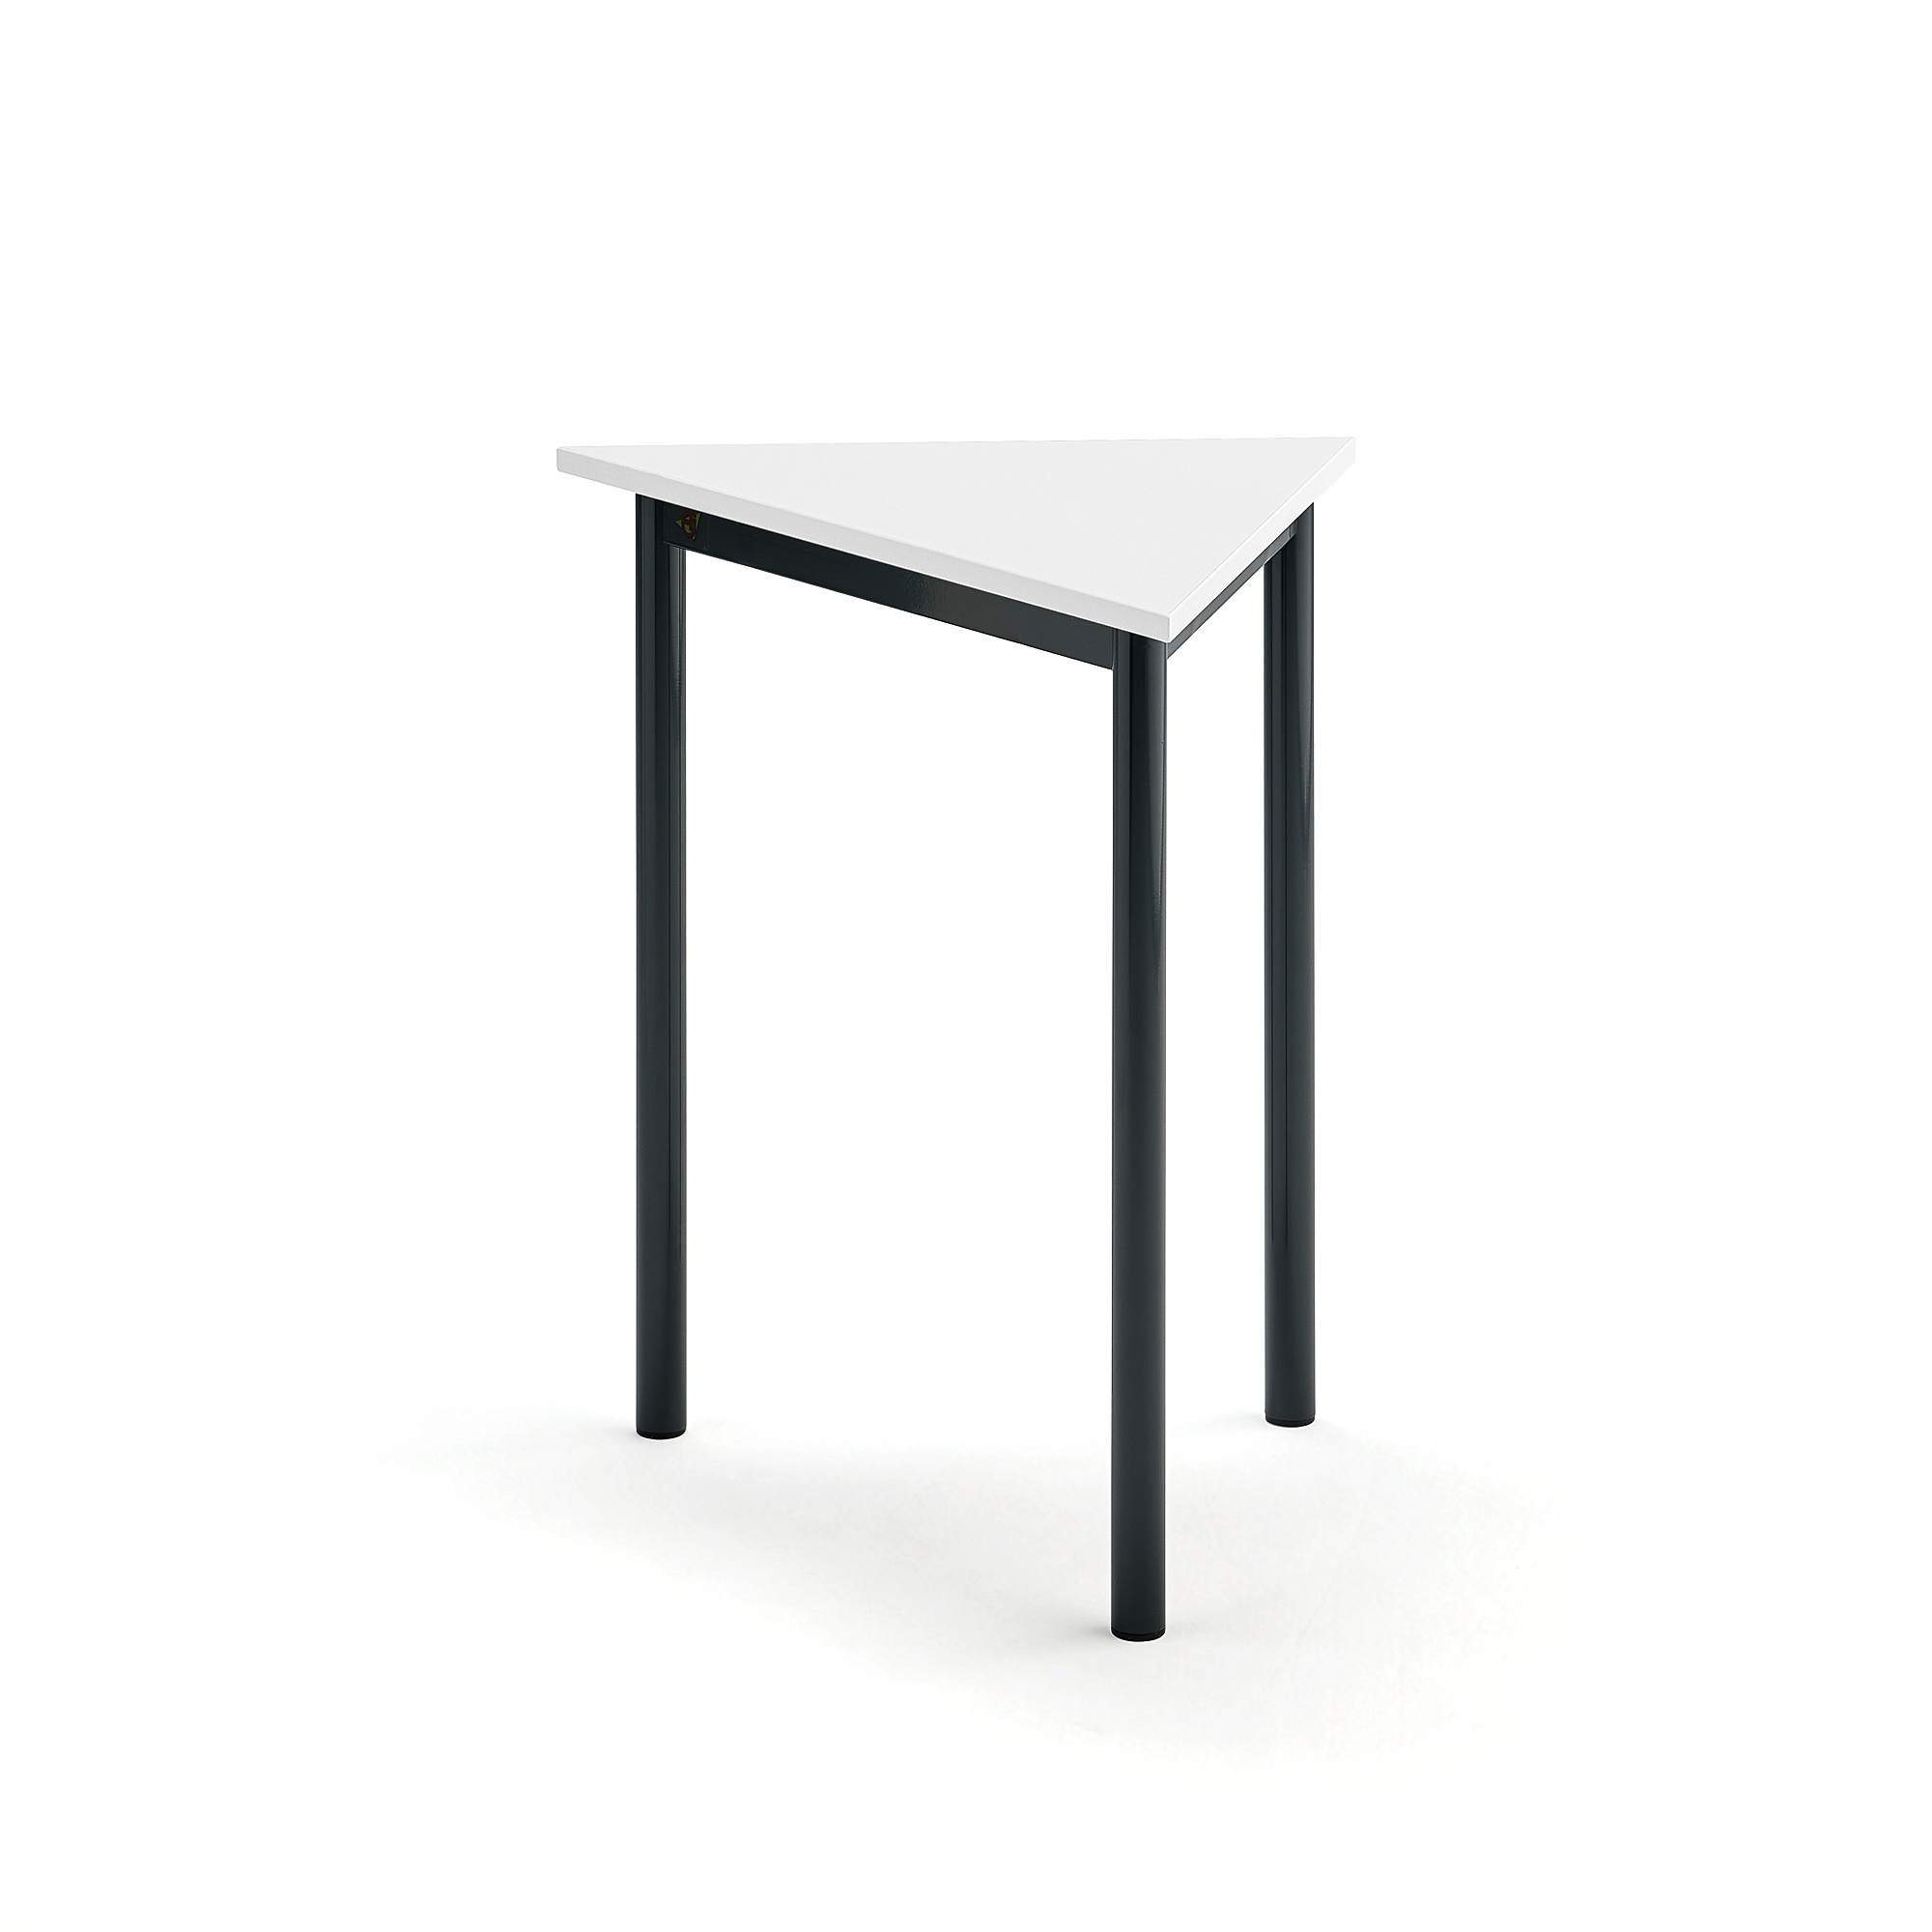 Stůl SONITUS TRIANGEL, 700x600x720 mm, antracitově šedé nohy, HPL deska tlumící hluk, bílá